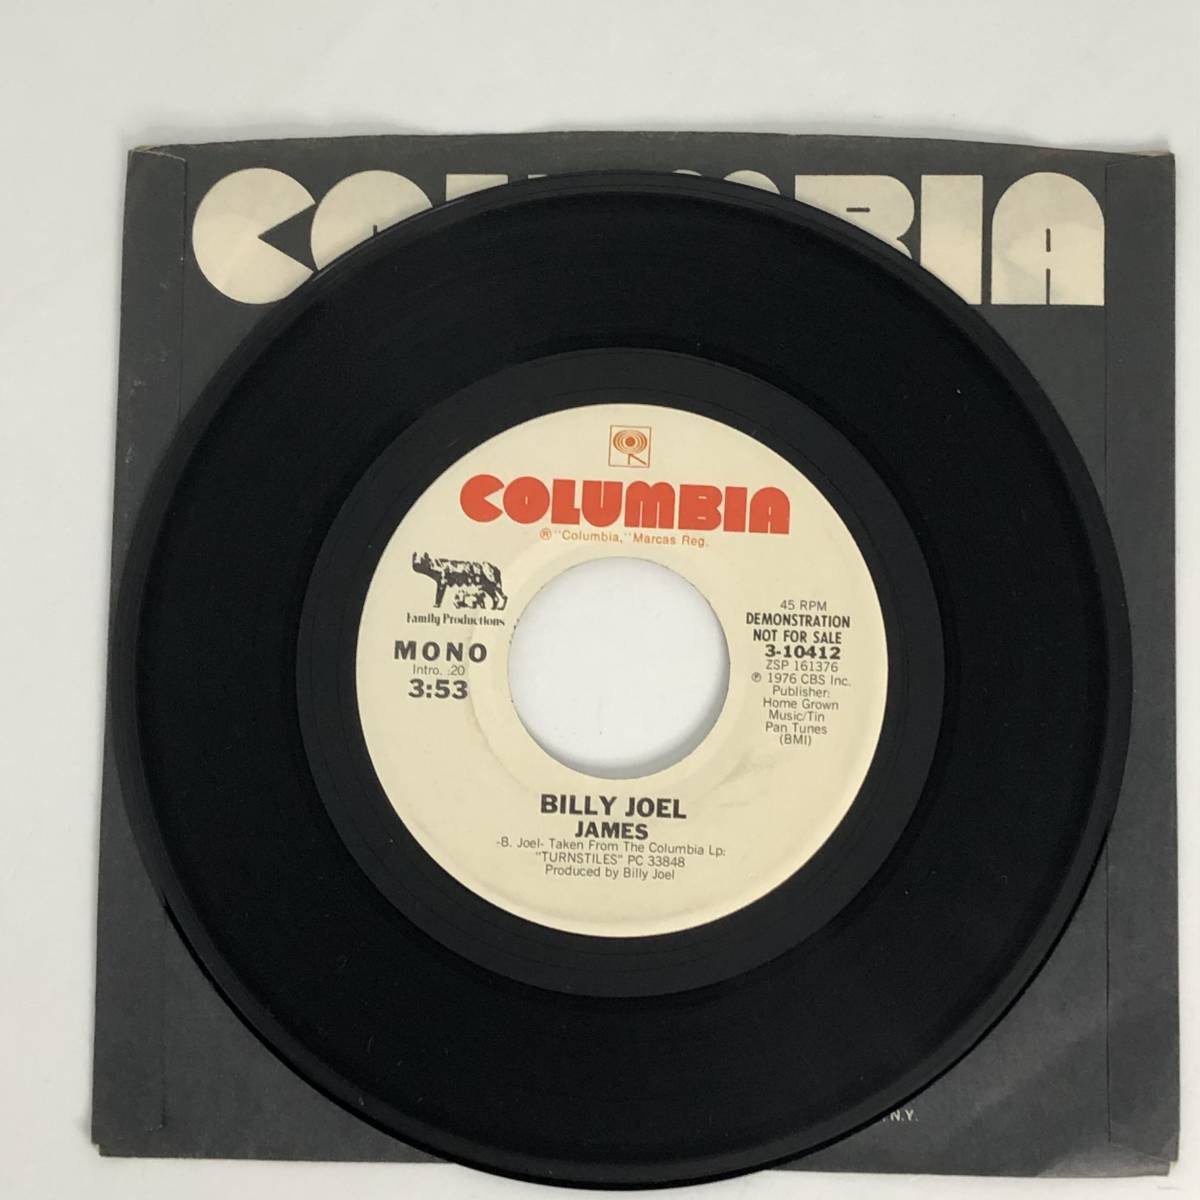 中古 US プロモ盤 シングルレコード Billy Joel James ビリー・ジョエル ジェームス Columbia 3-10412 白レーベル _画像2